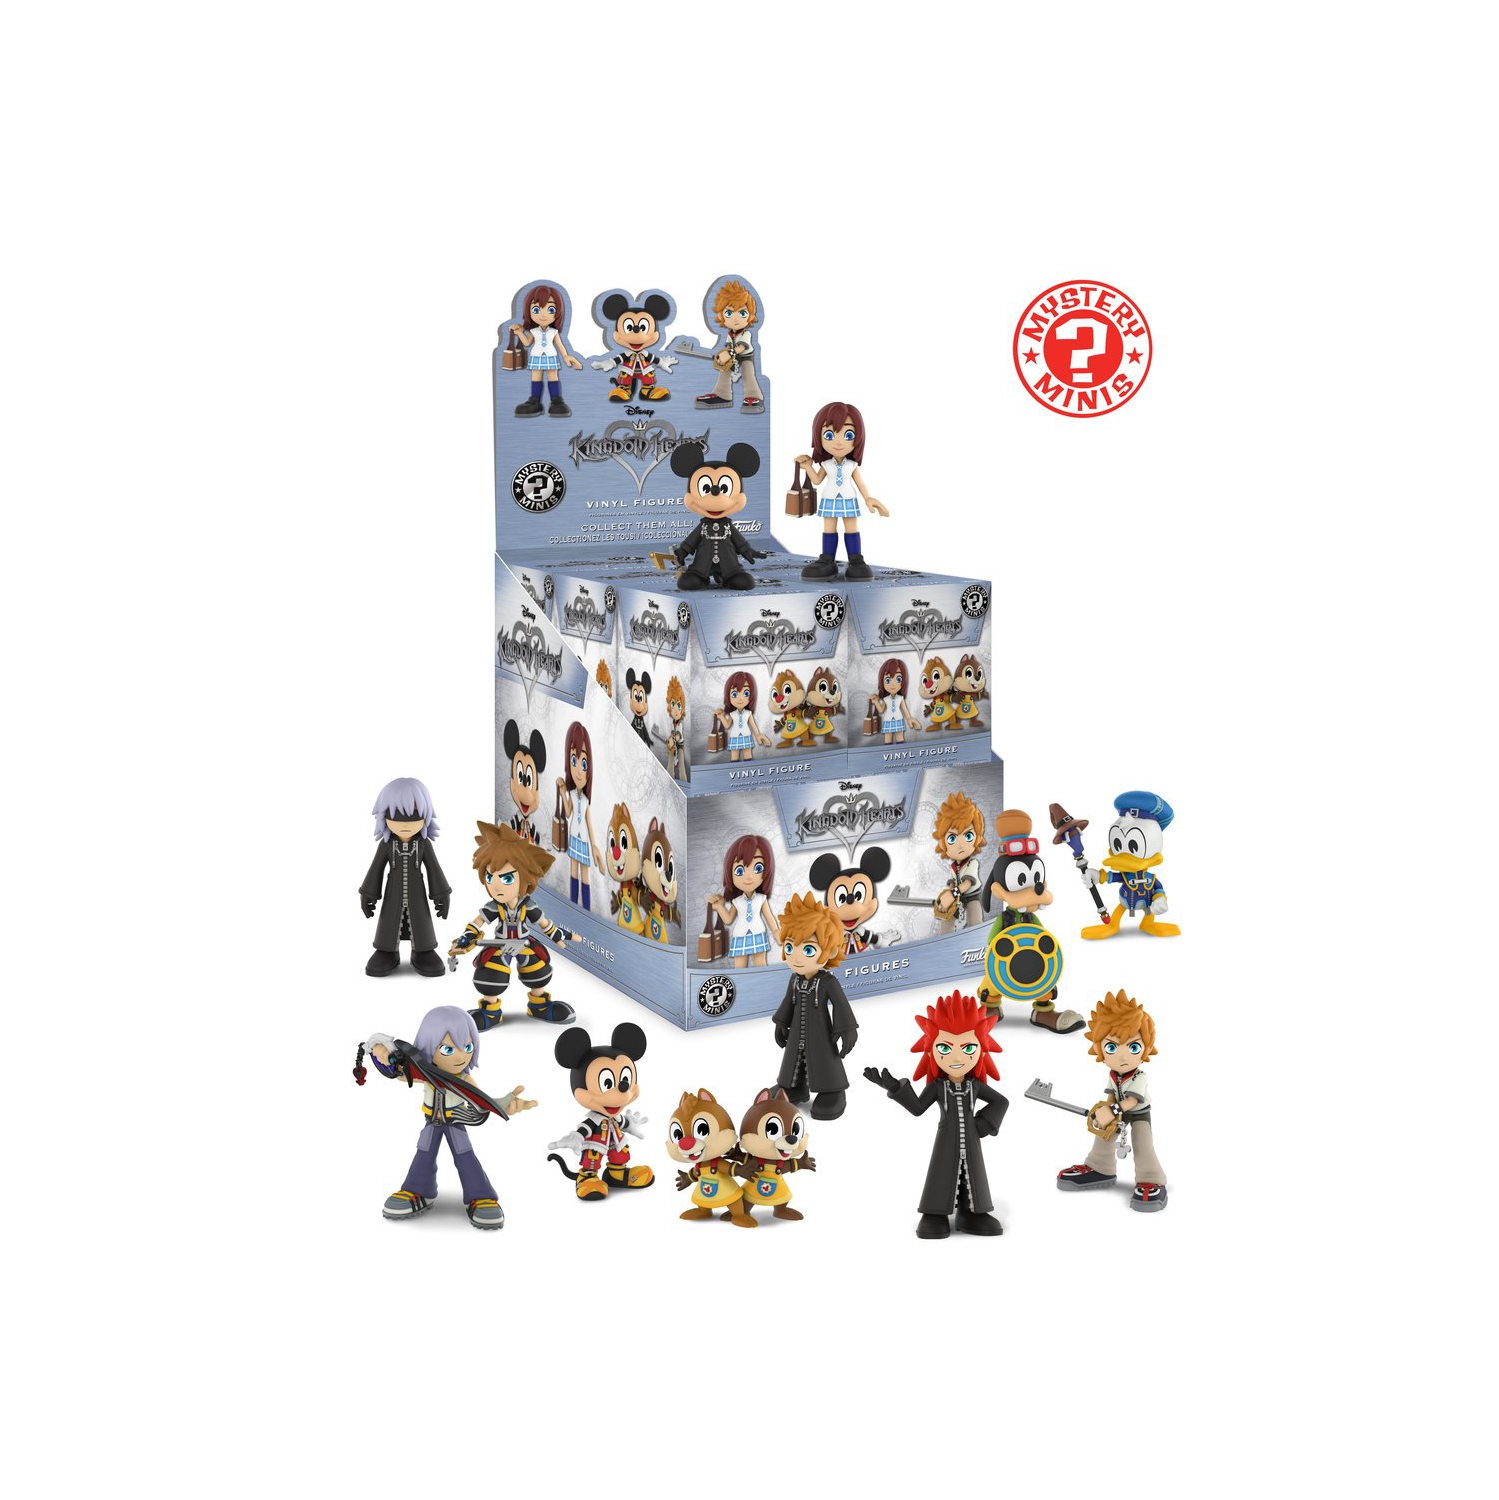 Kingdom Hearts Mystery Minis Blind Box by Funko - Single box